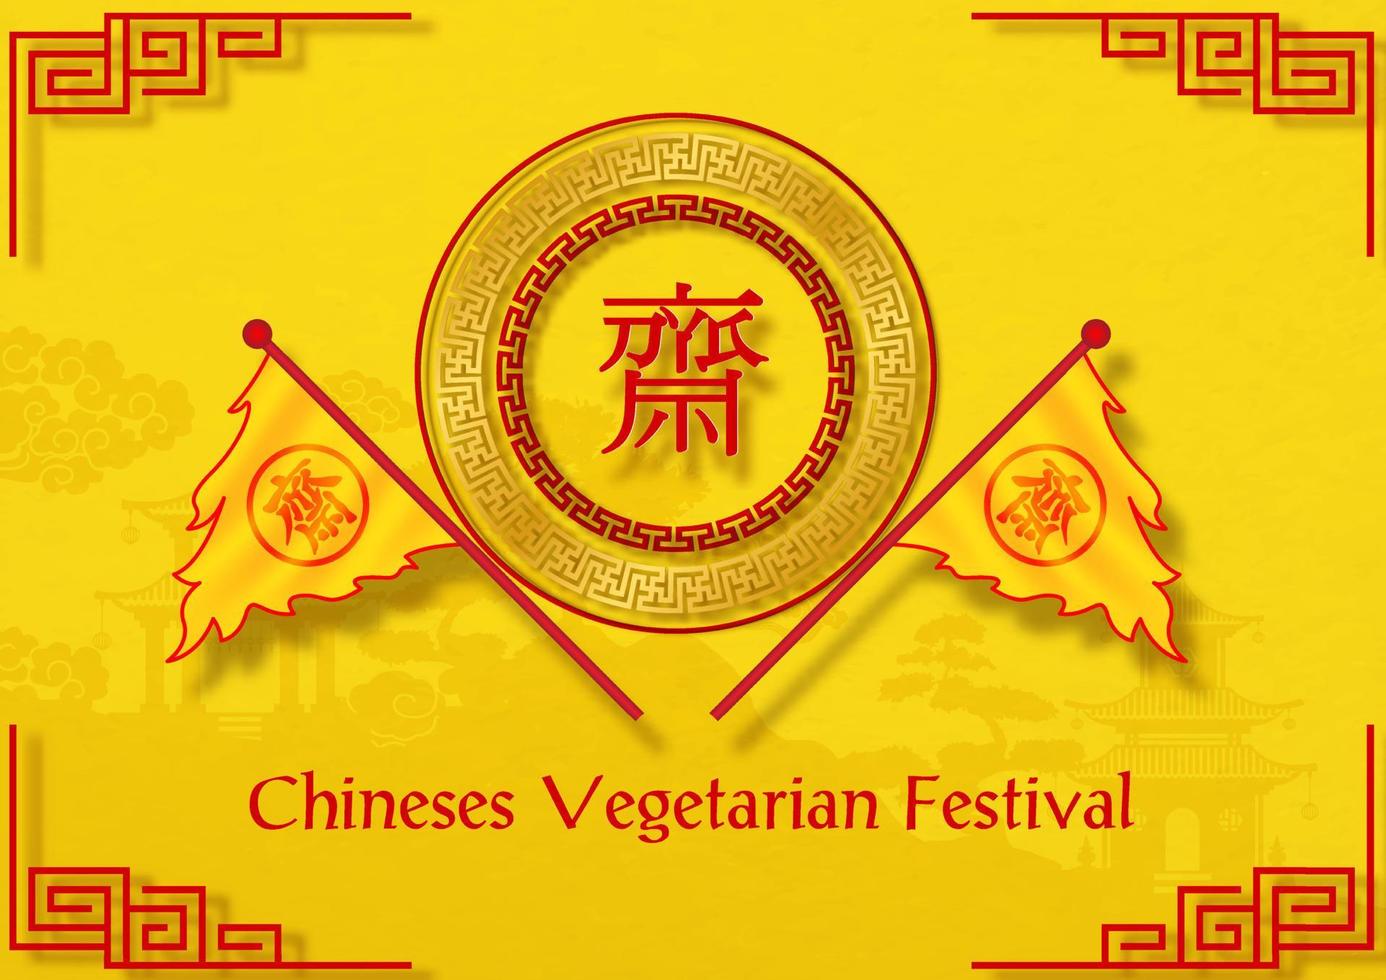 drapeaux de triangle de festival végétalien chinois avec cercle de décoration et lettres chinoises rouges, le nom de l'événement sur fond jaune. les lettres chinoises rouges signifient jeûner pour adorer bouddha en anglais. vecteur